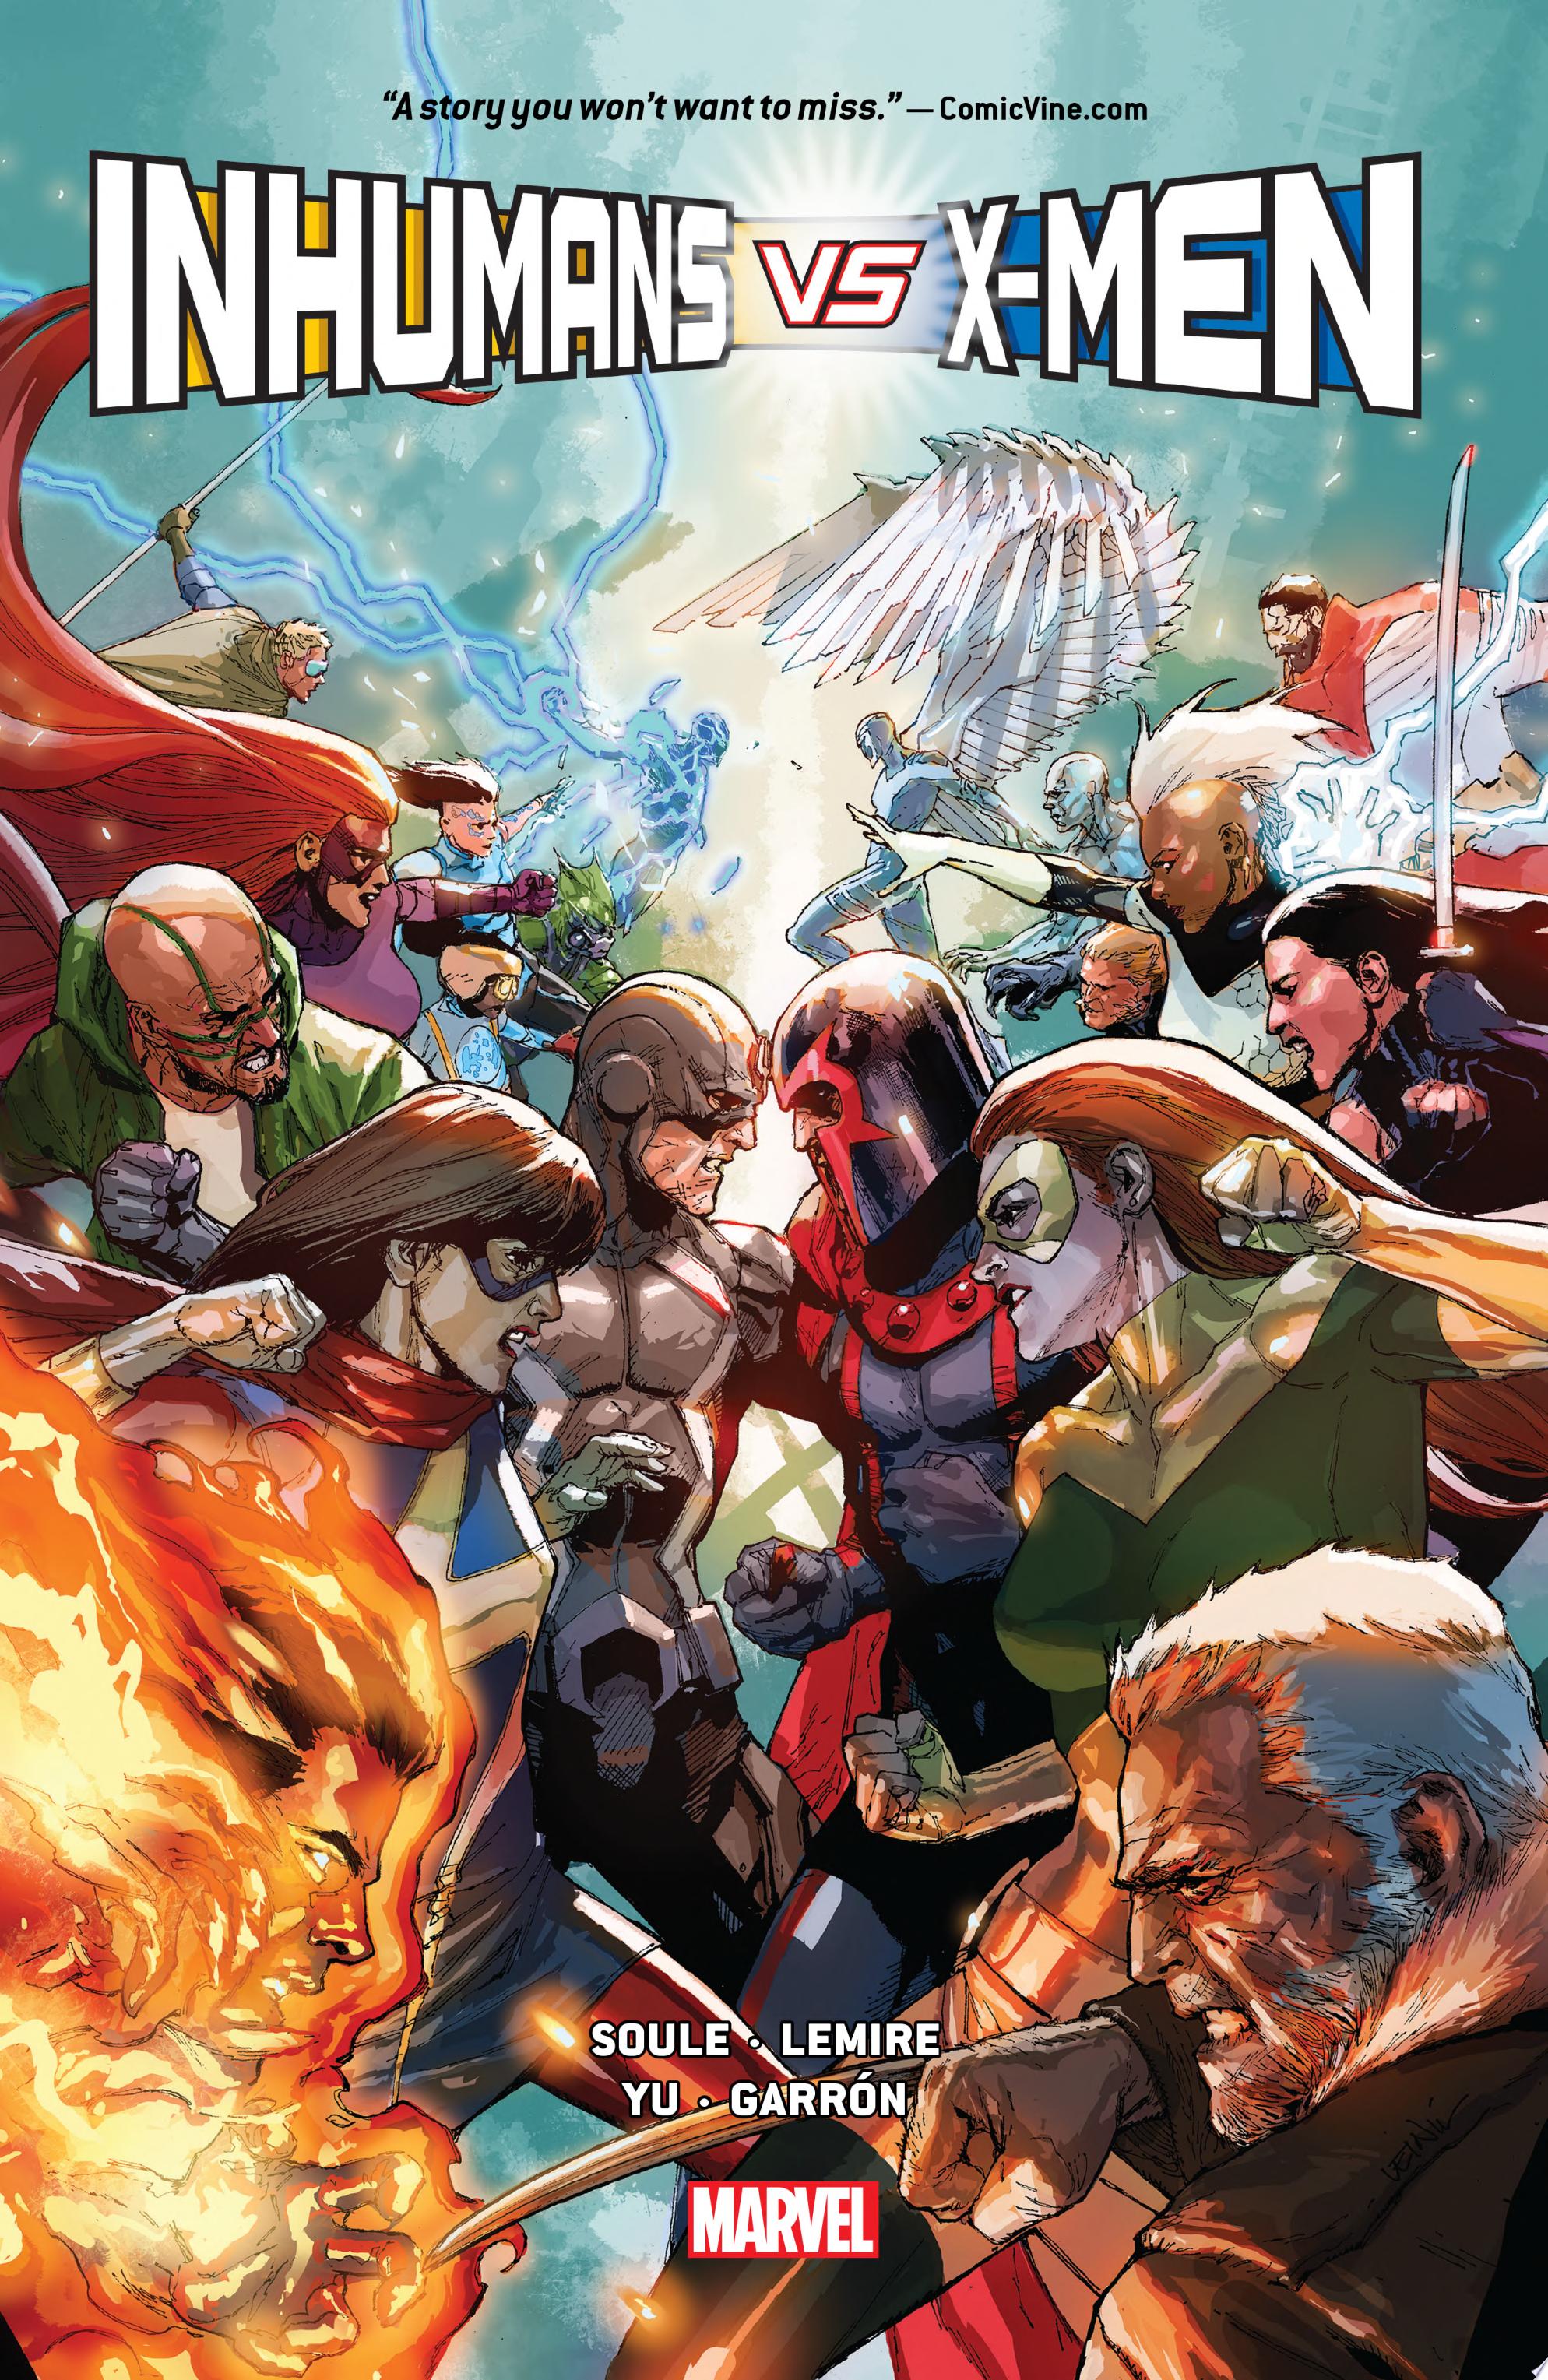 Image for "Inhumans Vs. X-Men"